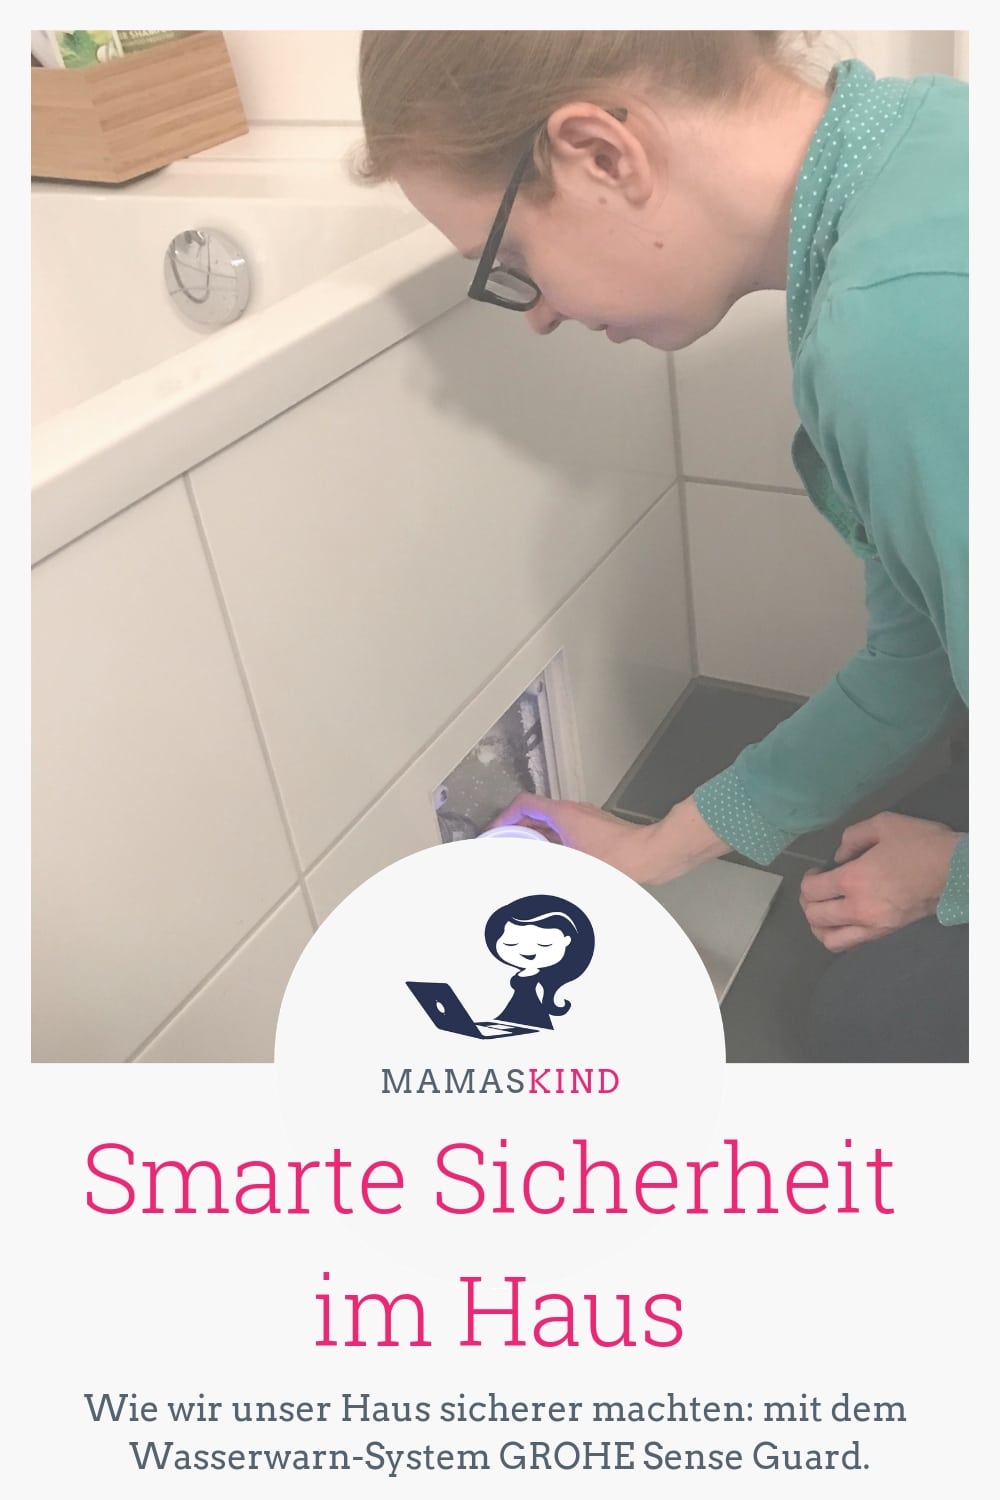 Smarte Sicherheit im Haus: GROHE Sense Guard | Mehr Infos zu unserem Wasserwarn-System auf Mamaskind.de